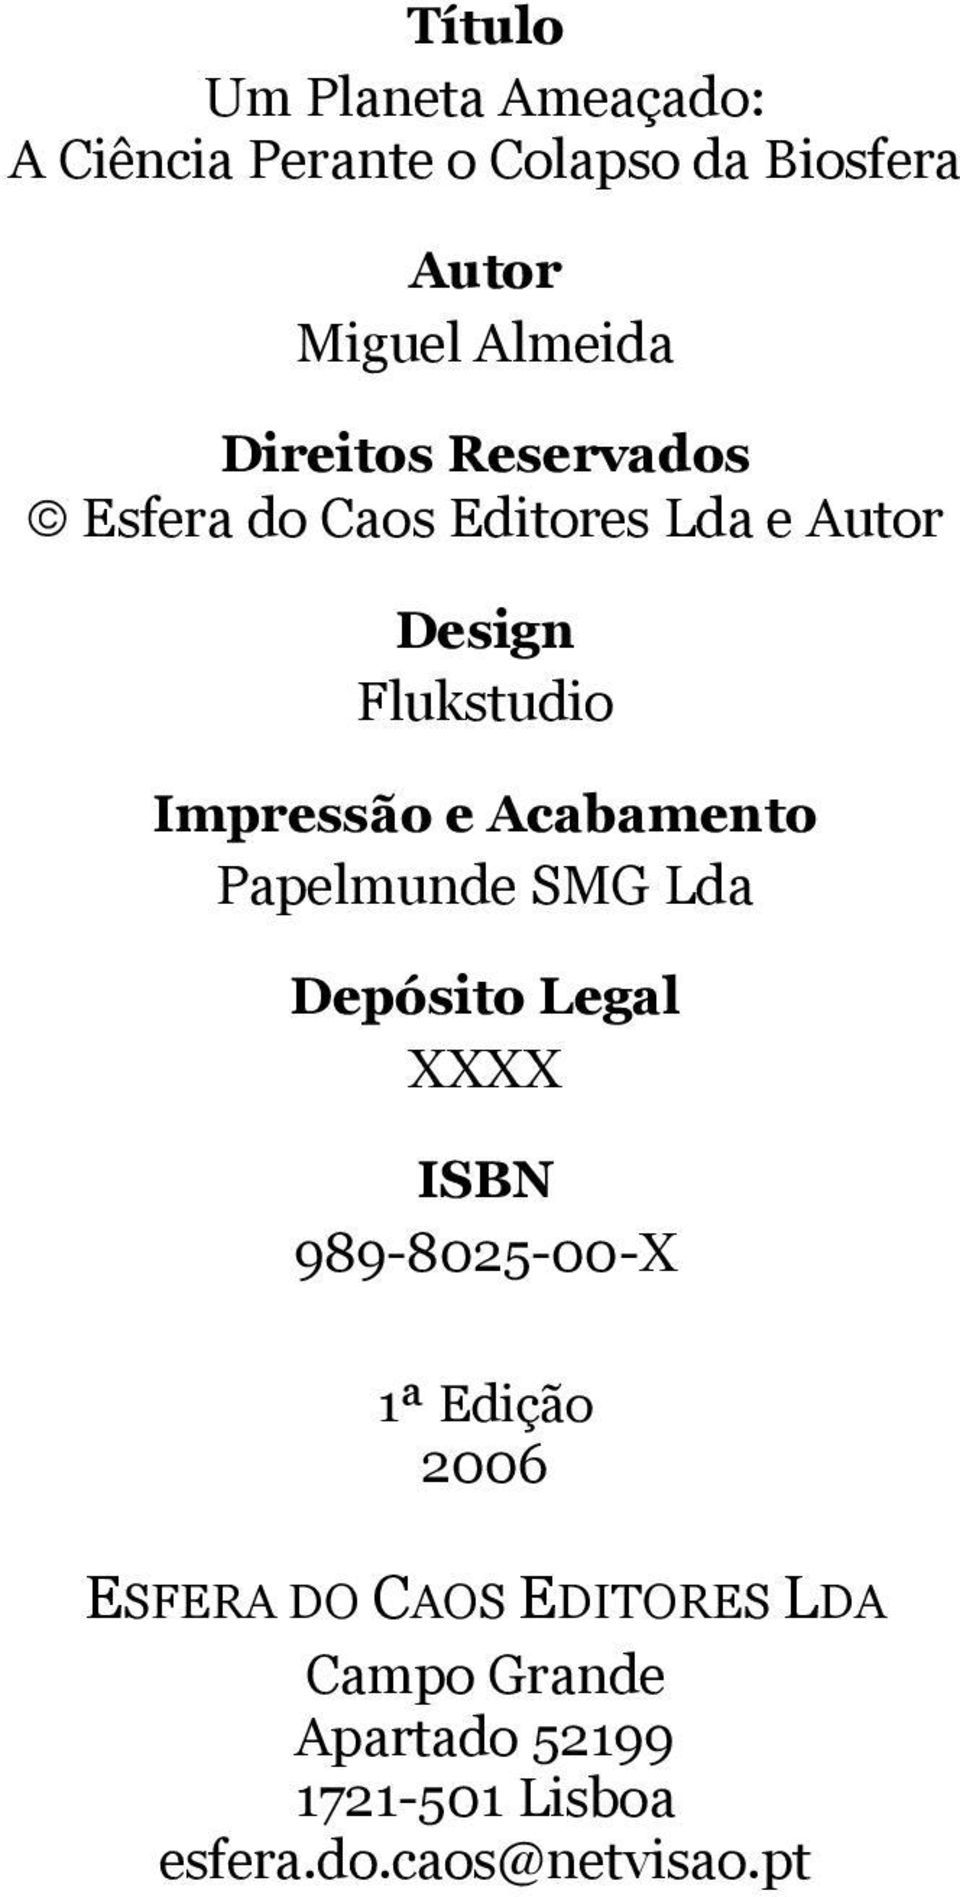 Acabamento Papelmunde SMG Lda Depósito Legal XXXX ISBN 989-8025-00-X 1ª Edição 2006